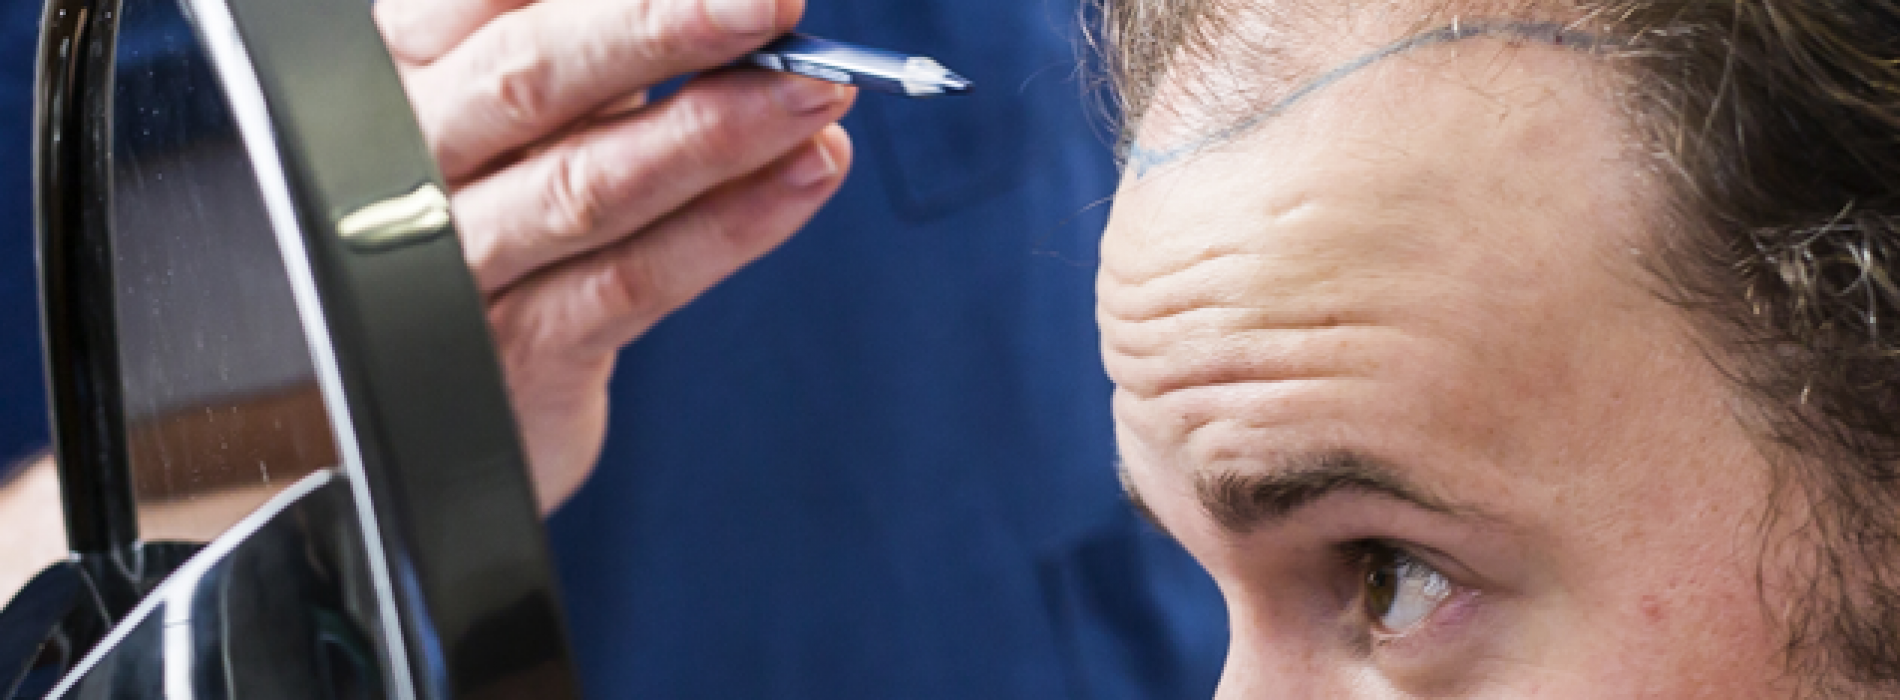 Alles wat je moet weten voor je een haartransplantatie ondergaat